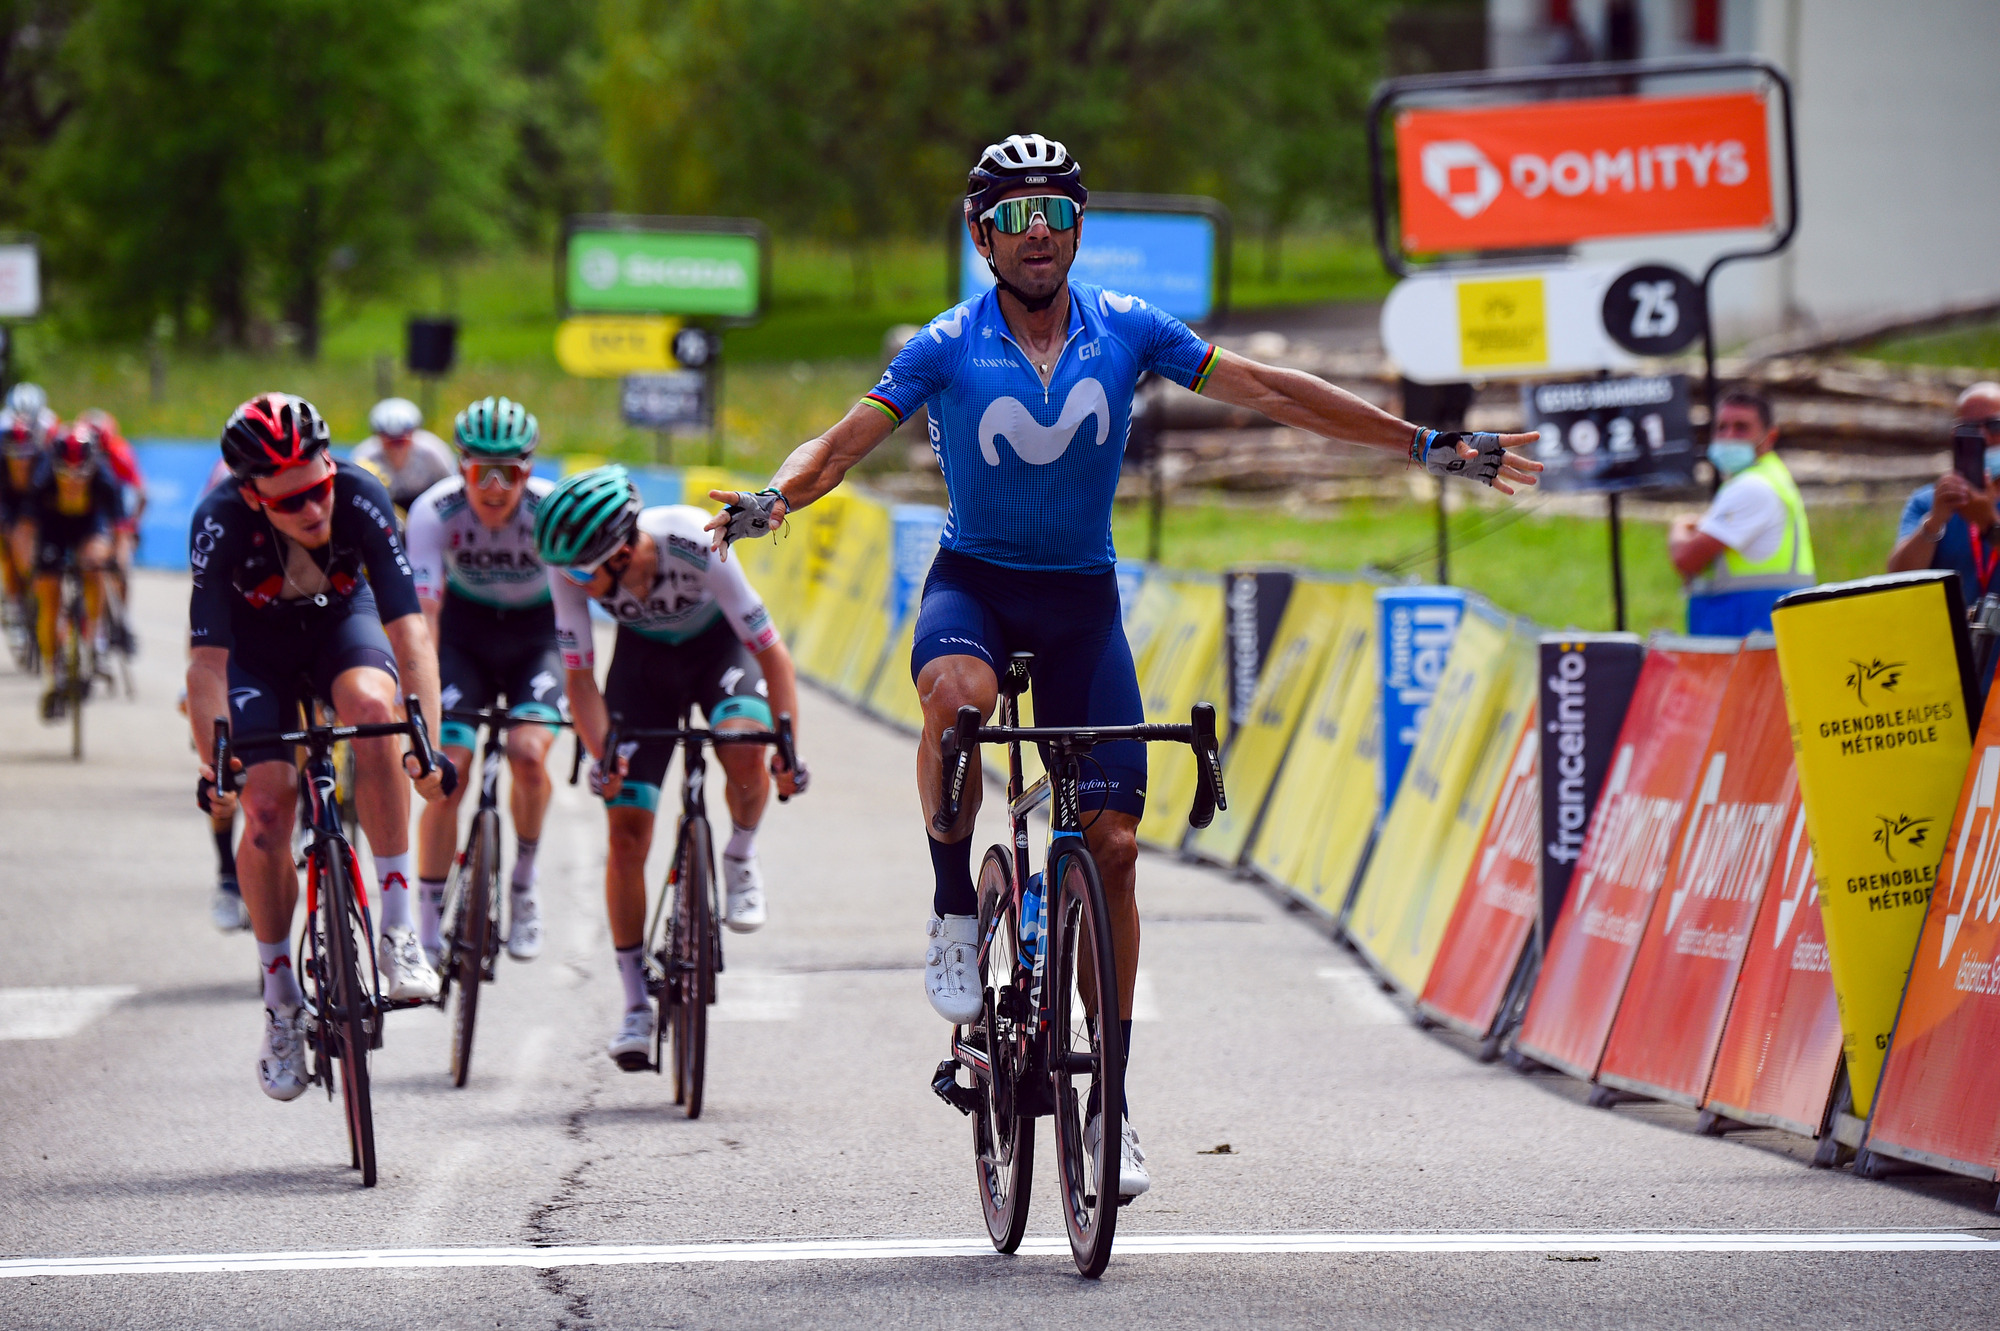 Critérium du Dauphiné: Alejandro Valverde wins stage 6 | Cyclingnews